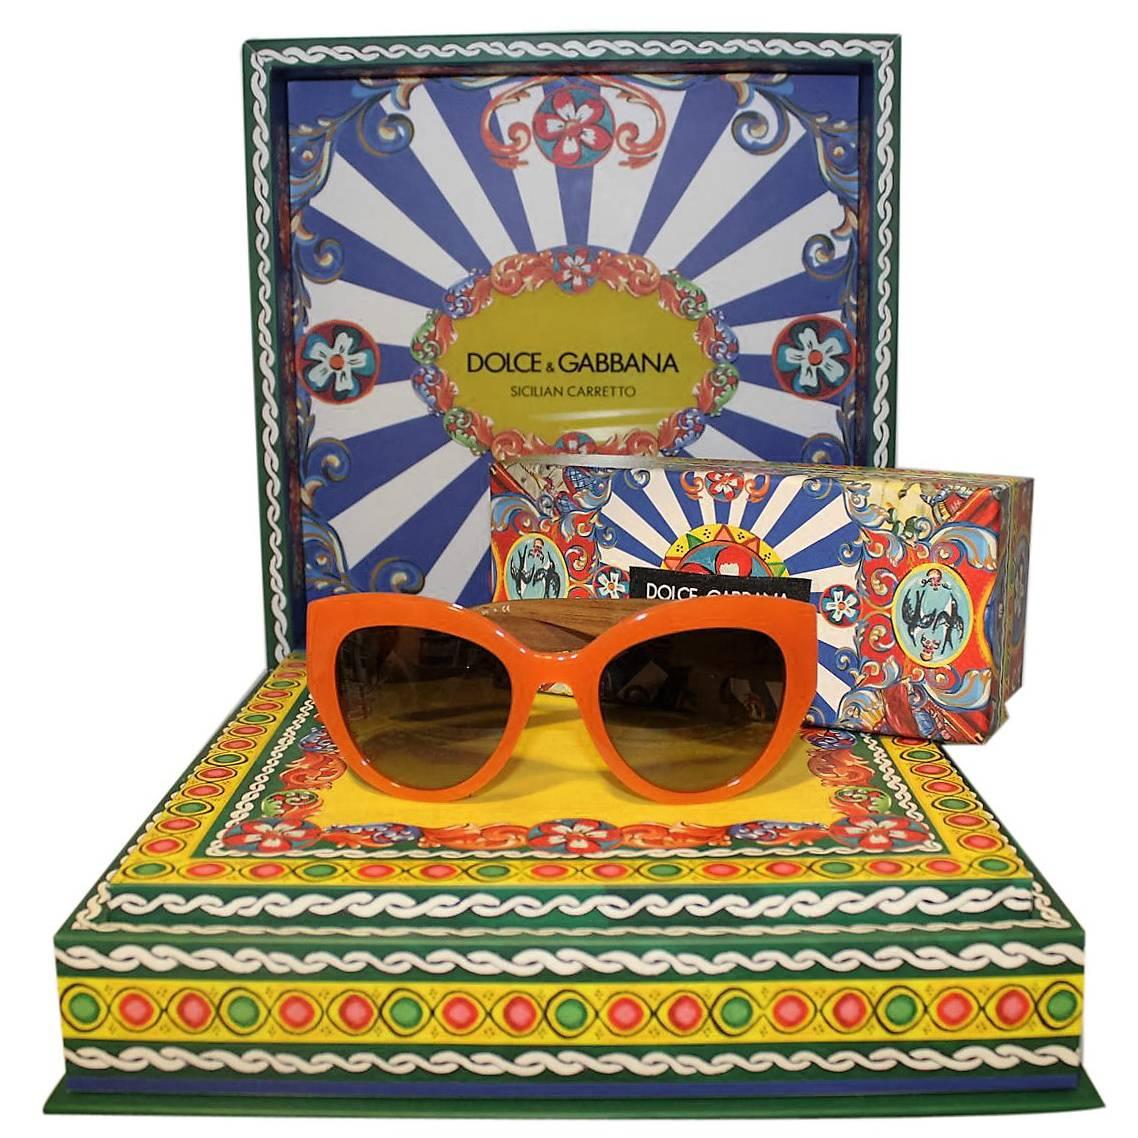 New Dolce & Gabbana DG 4278 Sicilian Carretto Sunglasses